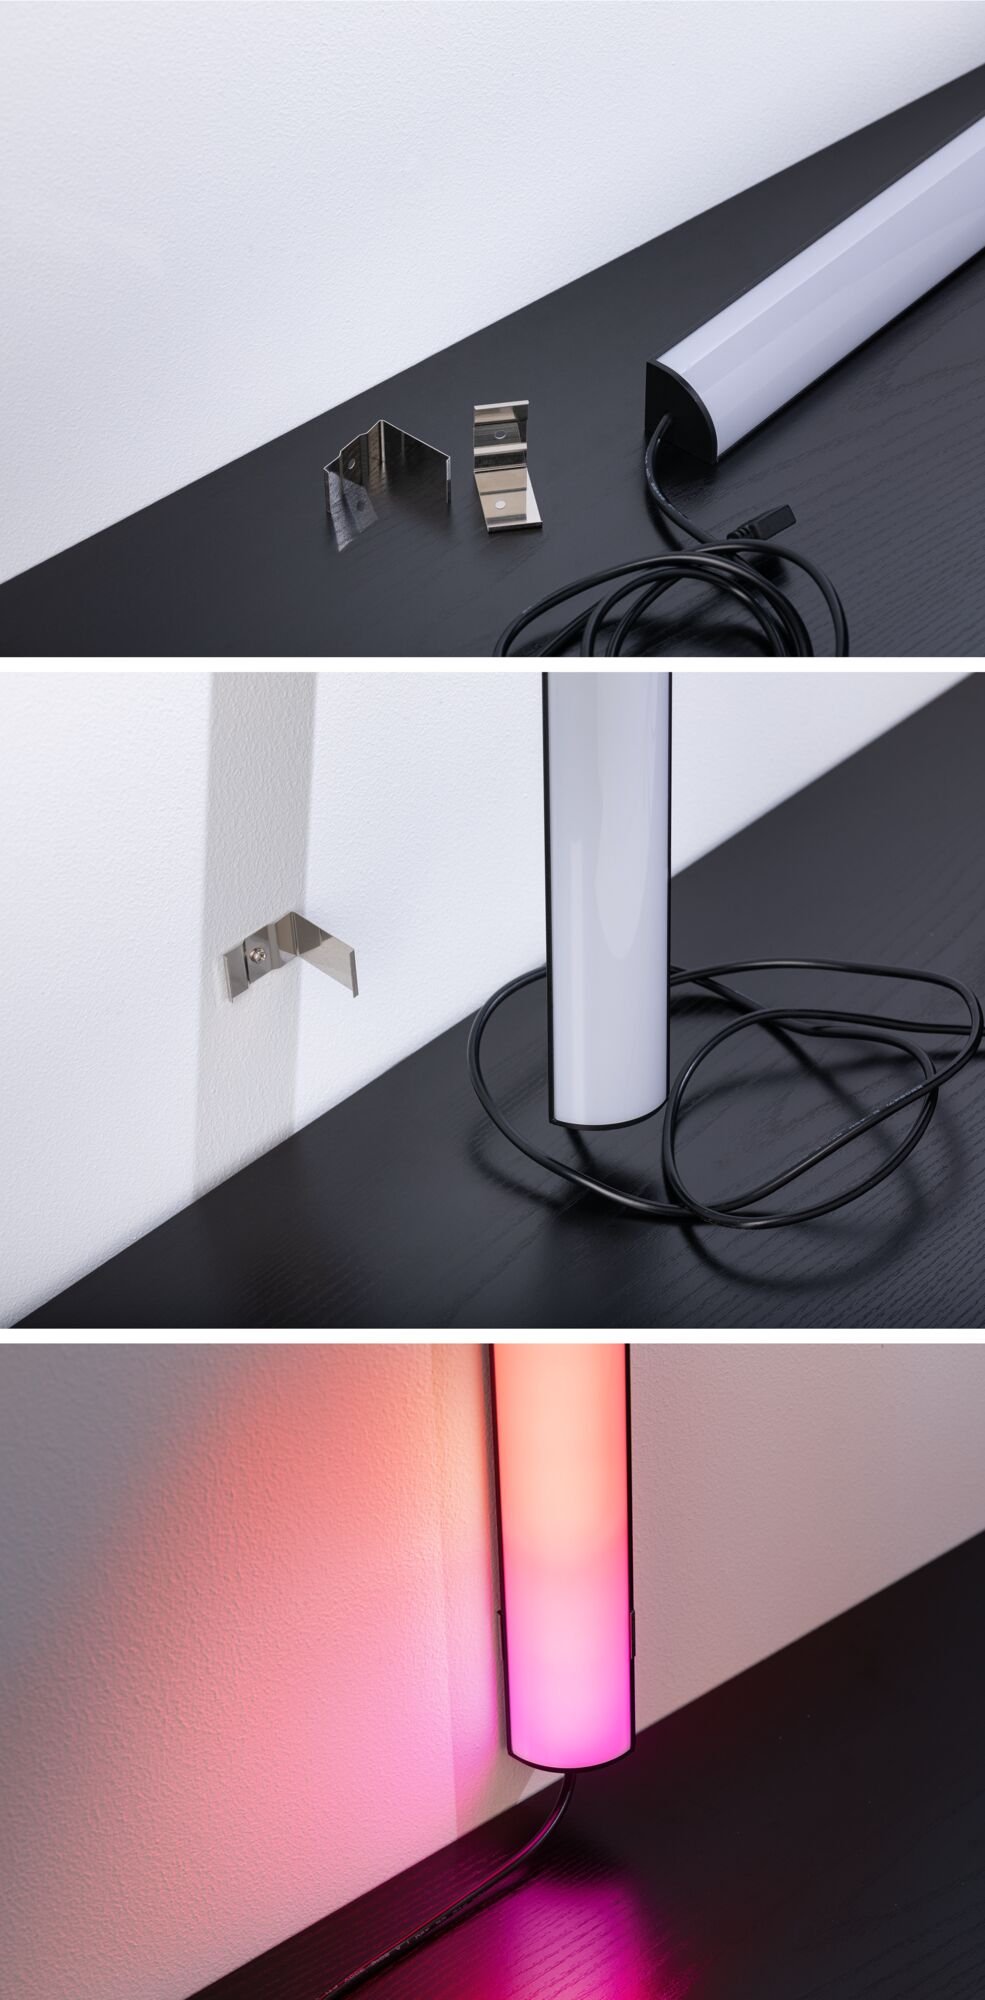 EntertainLED Bundle Lightbar Dynamic RGB + Standfuß (2er-Set) 30 cm